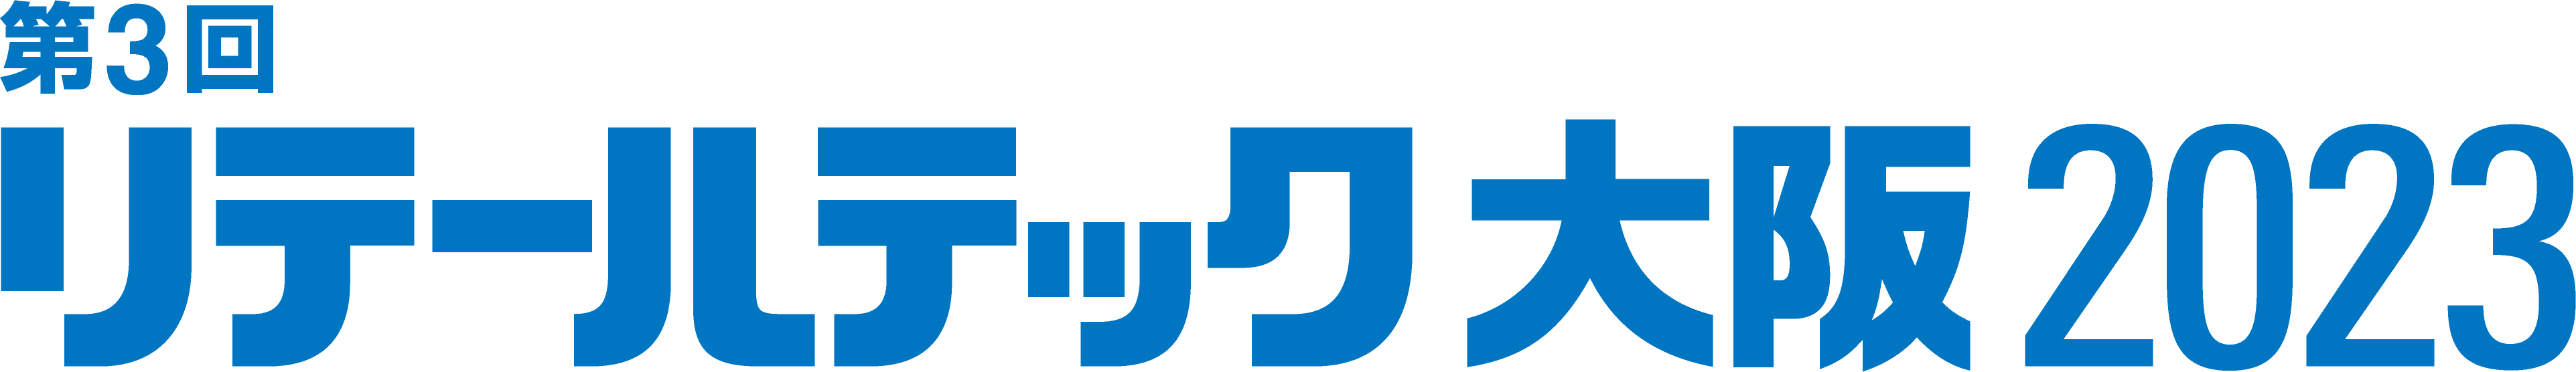 retail-tech-2023-logo